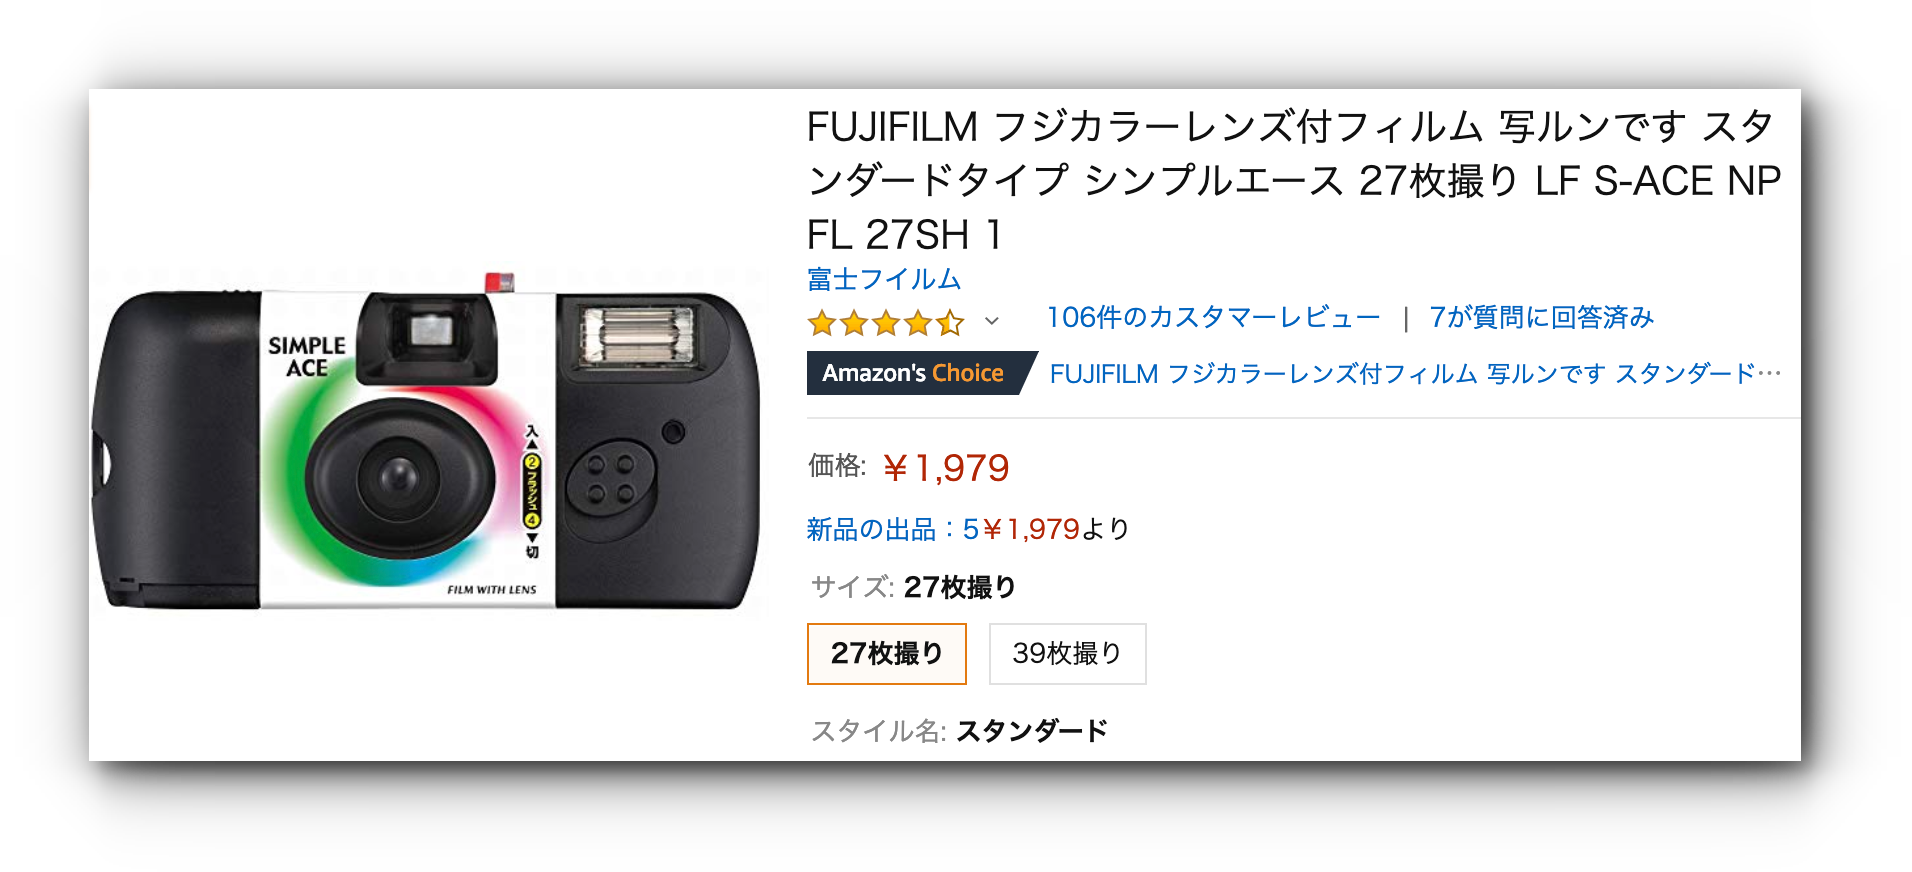 Top 2&1 Fujifilm Simple ACE 富士即可拍相機 29張/39張 LF S-ACE NP